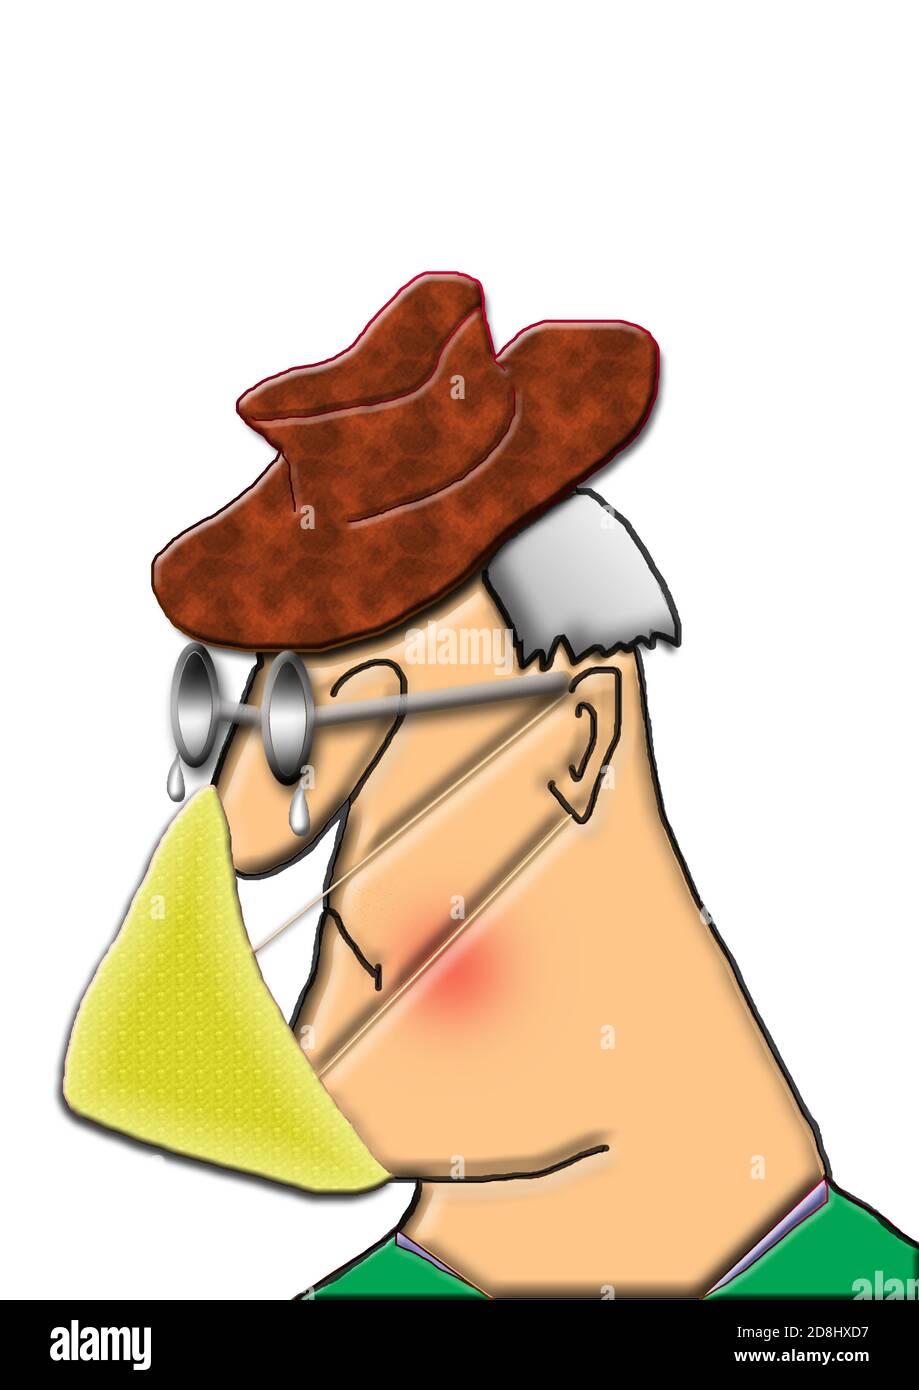 Covid 19 Gesichtsmaske auf einer Zeichentrickfigur schlecht passend Gesichtsbedeckung und verfärbte Gläser auf älteren Gentleman braun Ledereffekt Hut und graue Haare Stockfoto